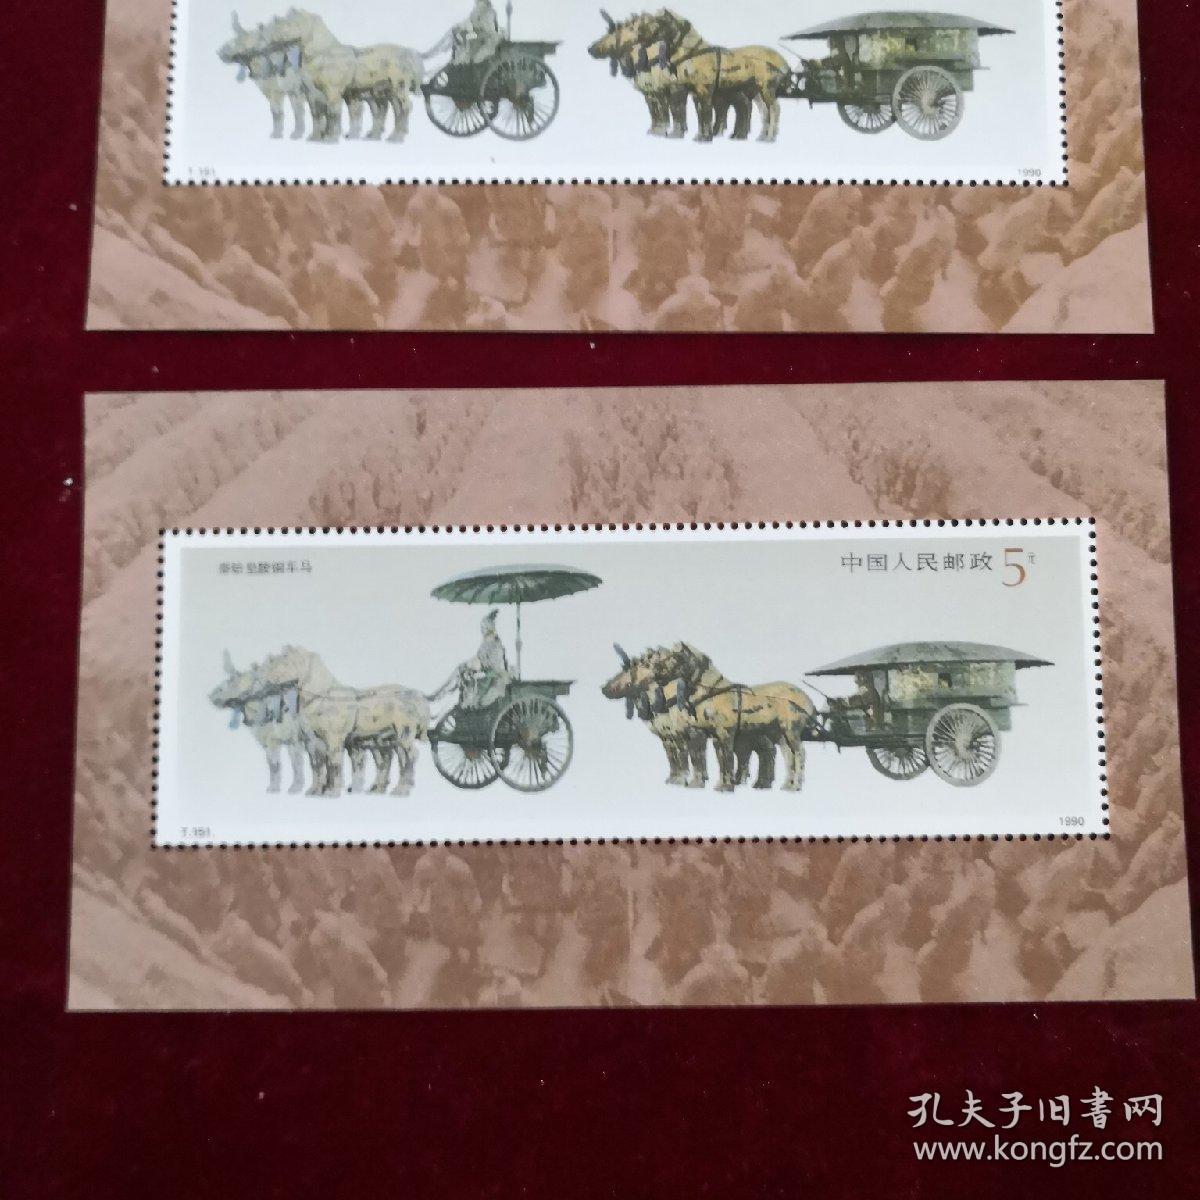 邮票 1990年T151 铜车马小型张2张合售（甲箱1